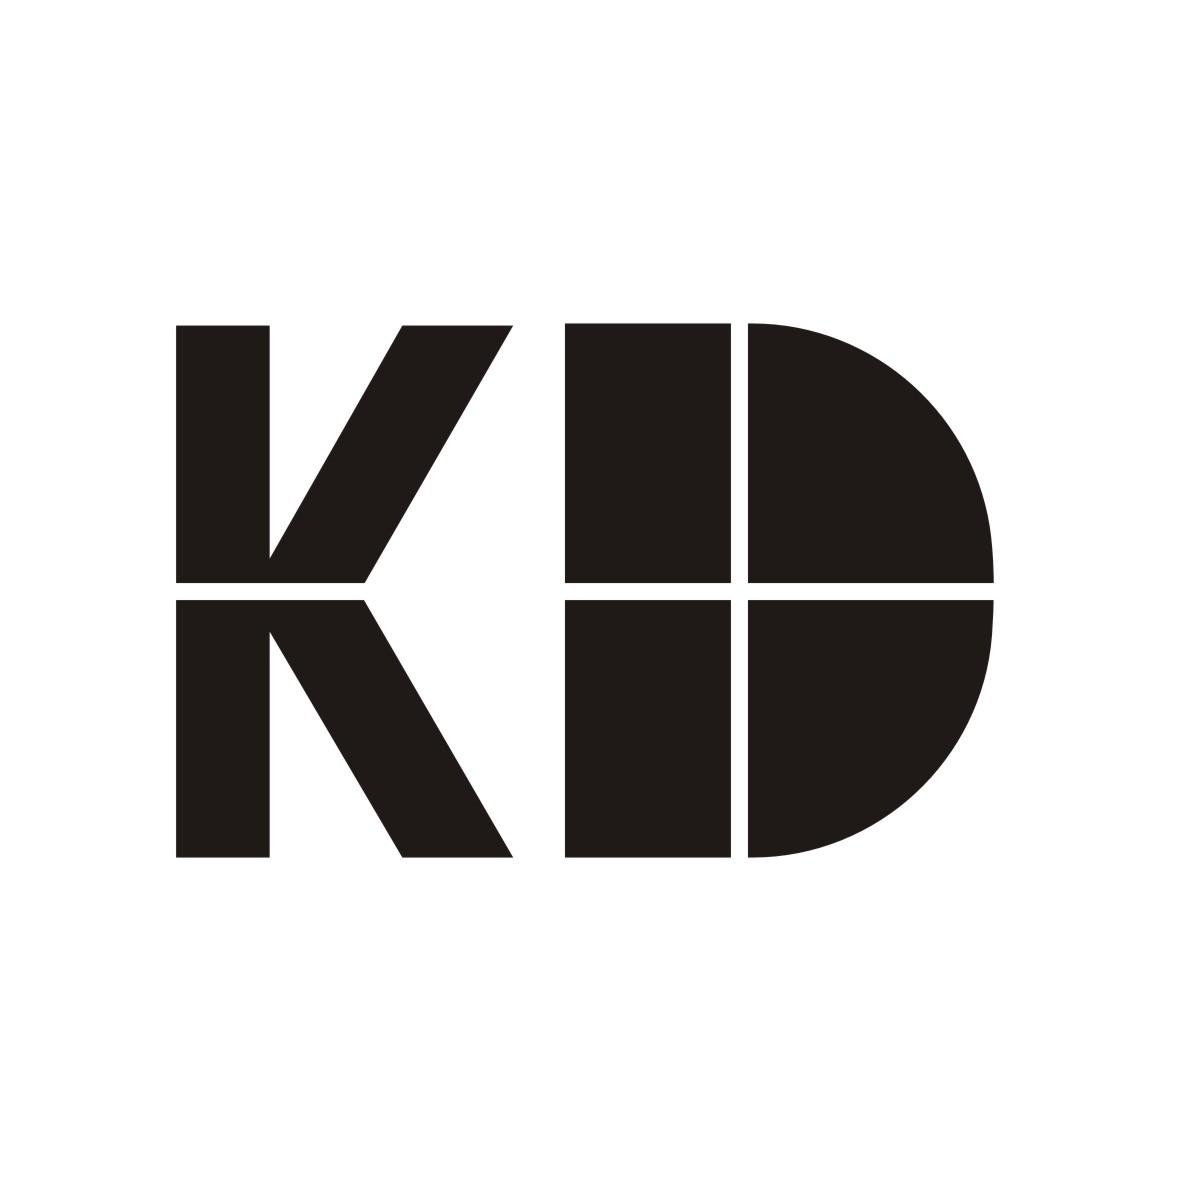 转让商标-KD